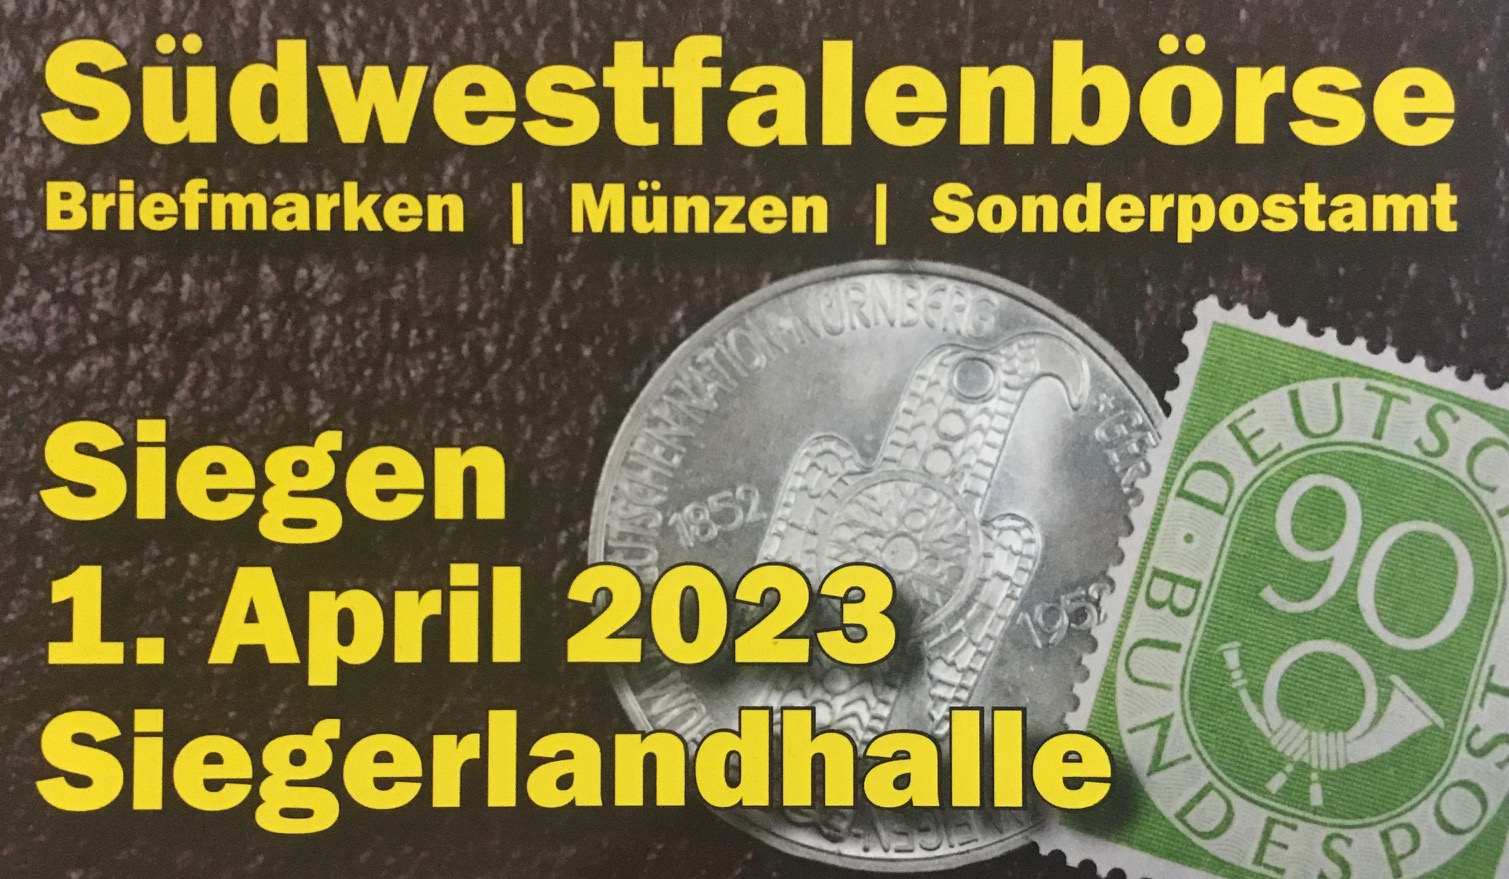 Südwestfalenbörse Siegen 01.04.2023 mit fünf Verbandsprüfern